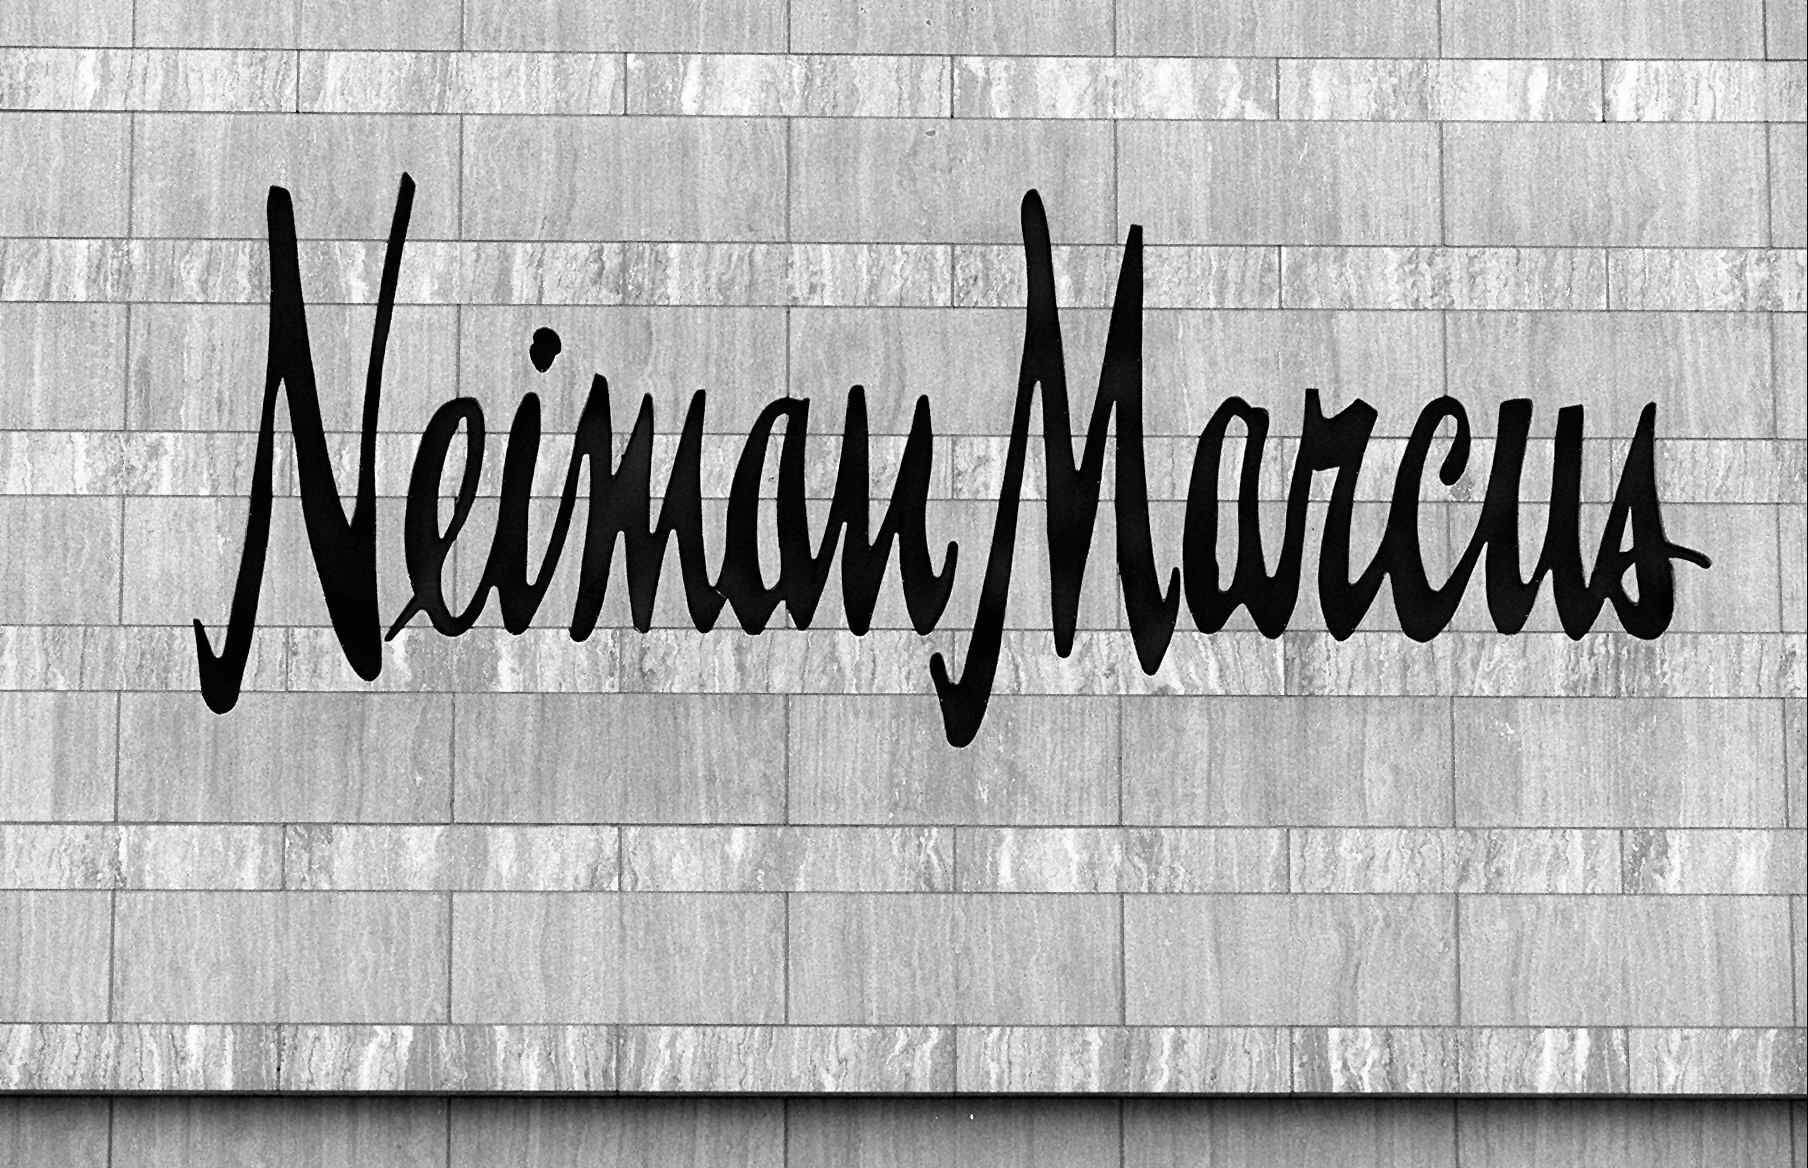 photos of Neiman Marcus